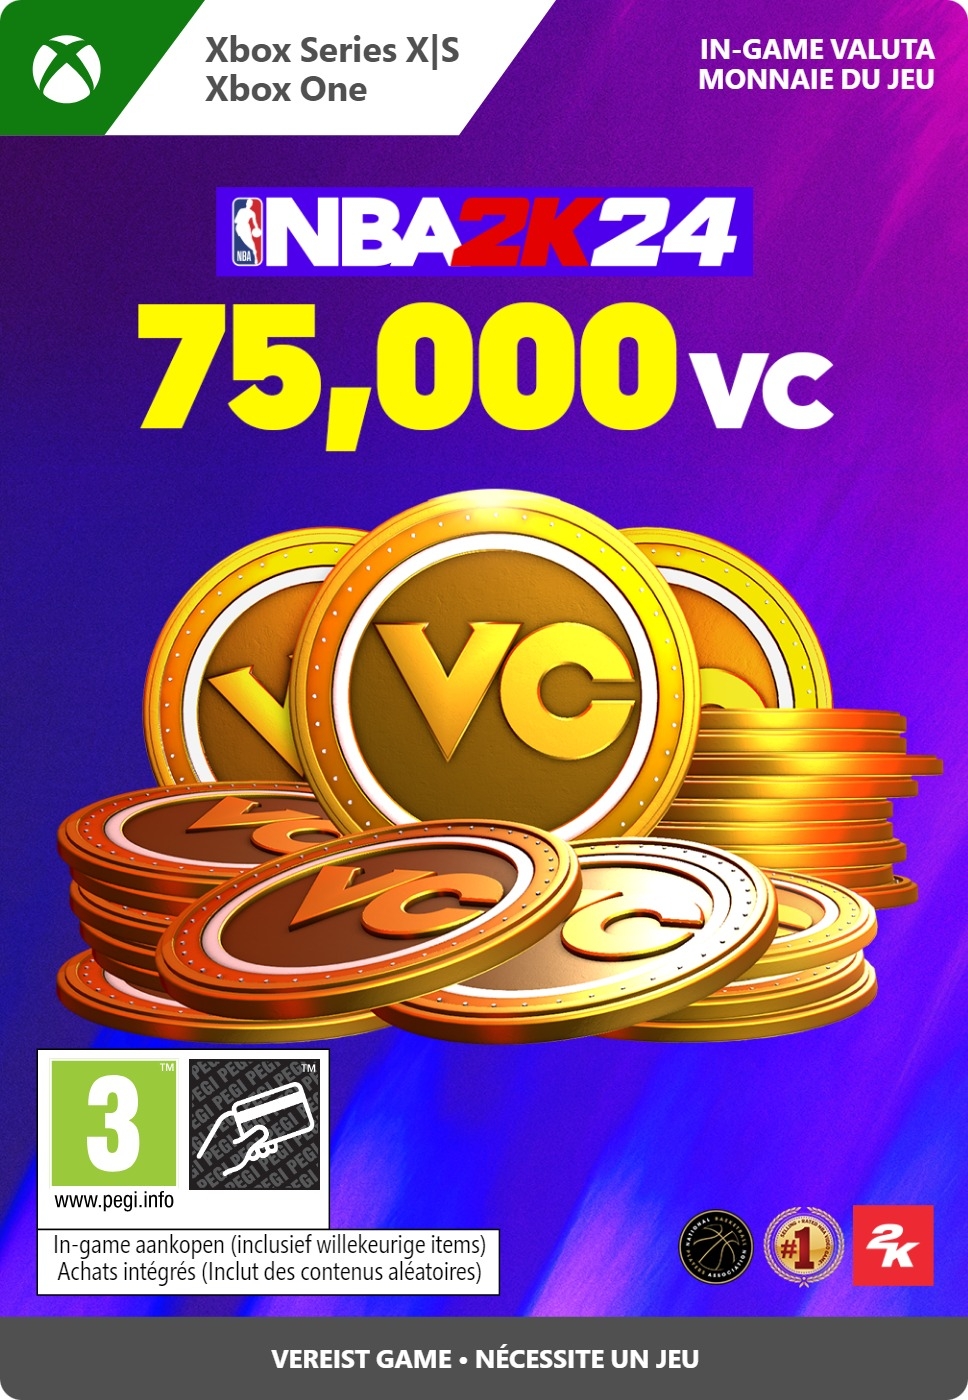 75.000 Xbox NBA 2K24 VC